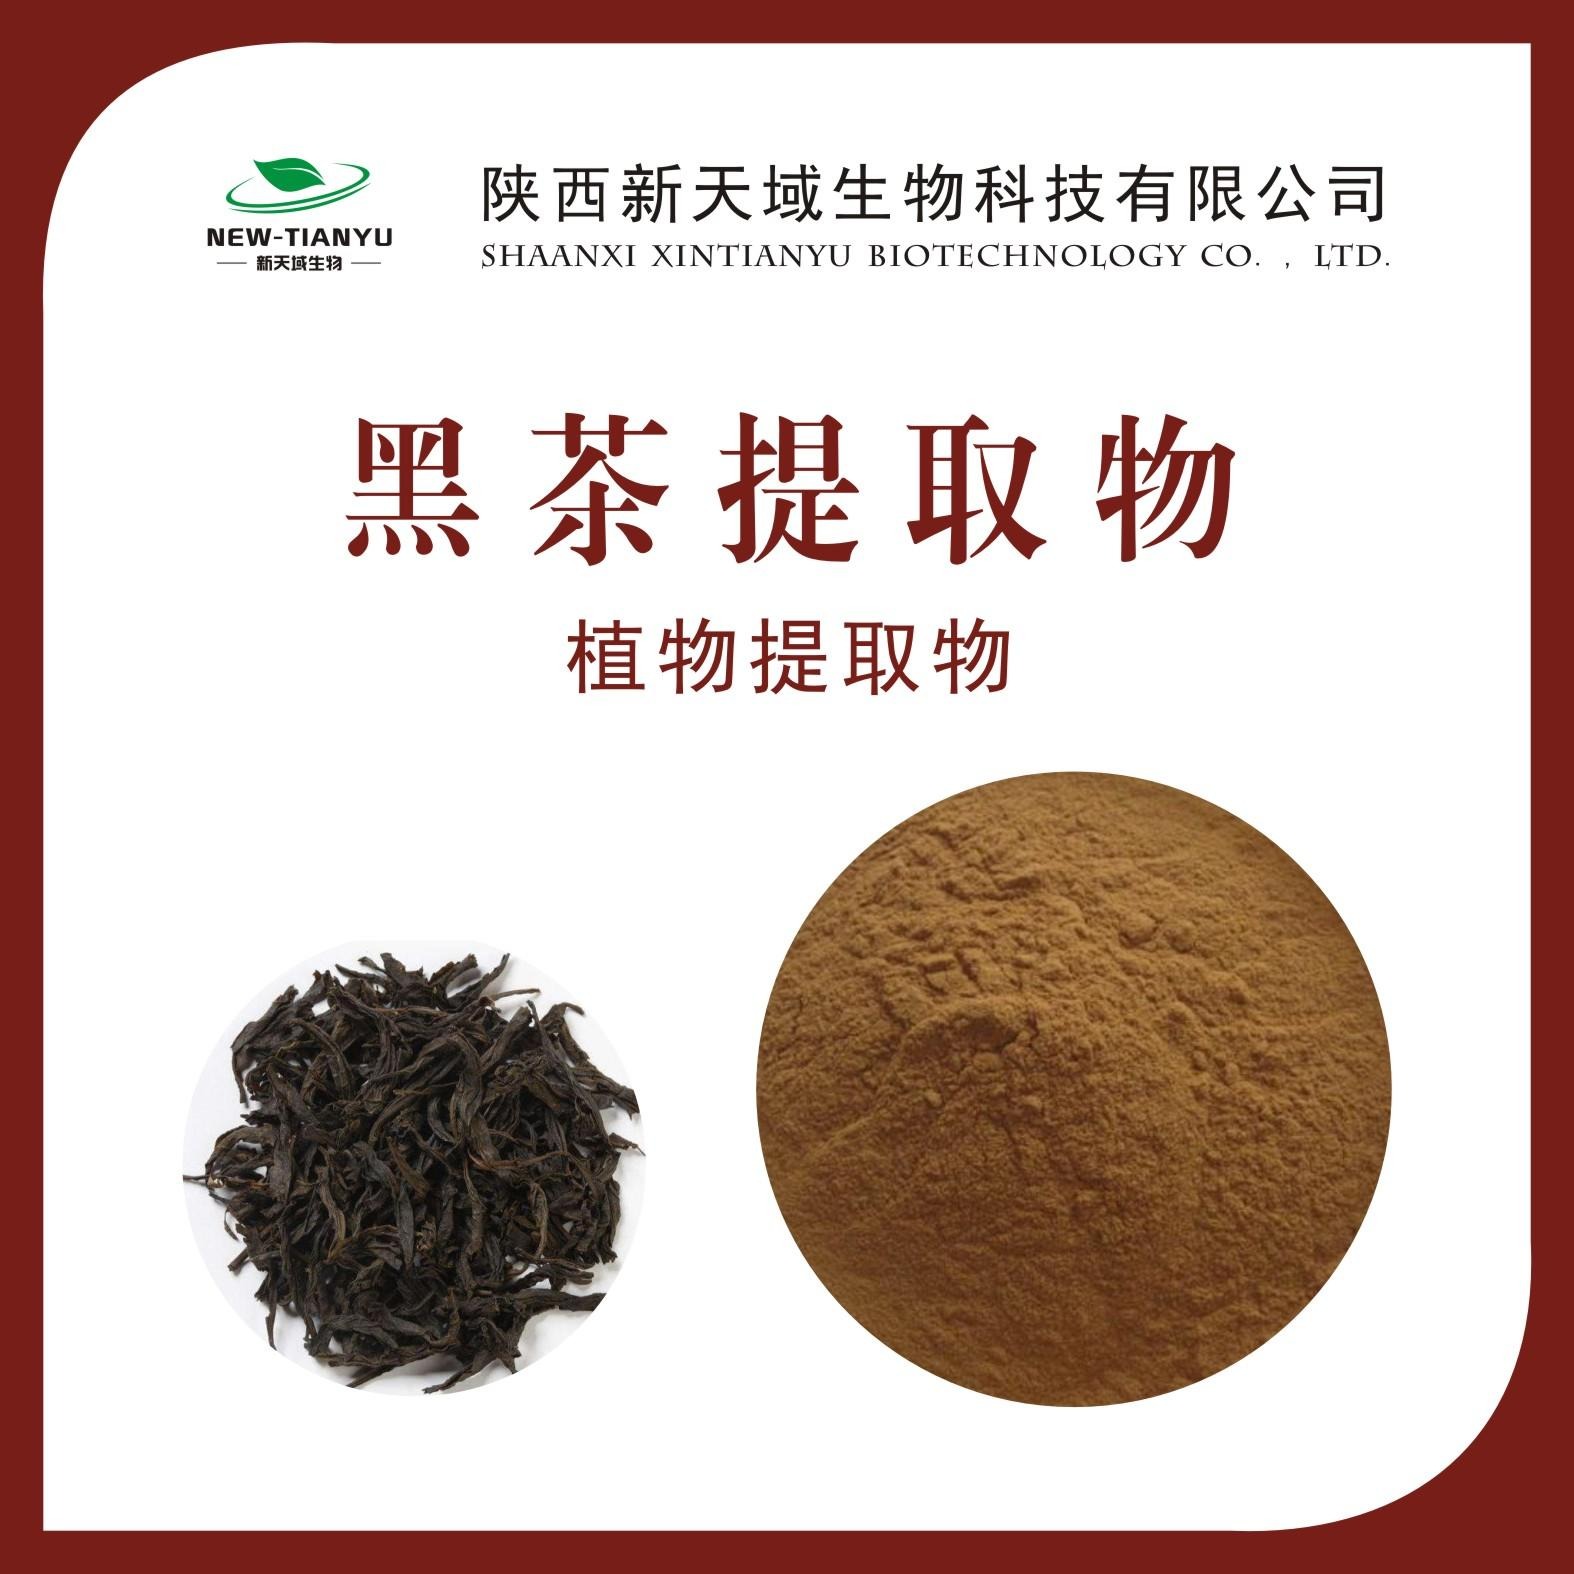 黑茶提取物 黑茶浓缩粉 黑茶喷雾干燥粉 黑茶粉 生产厂家 现货保邮